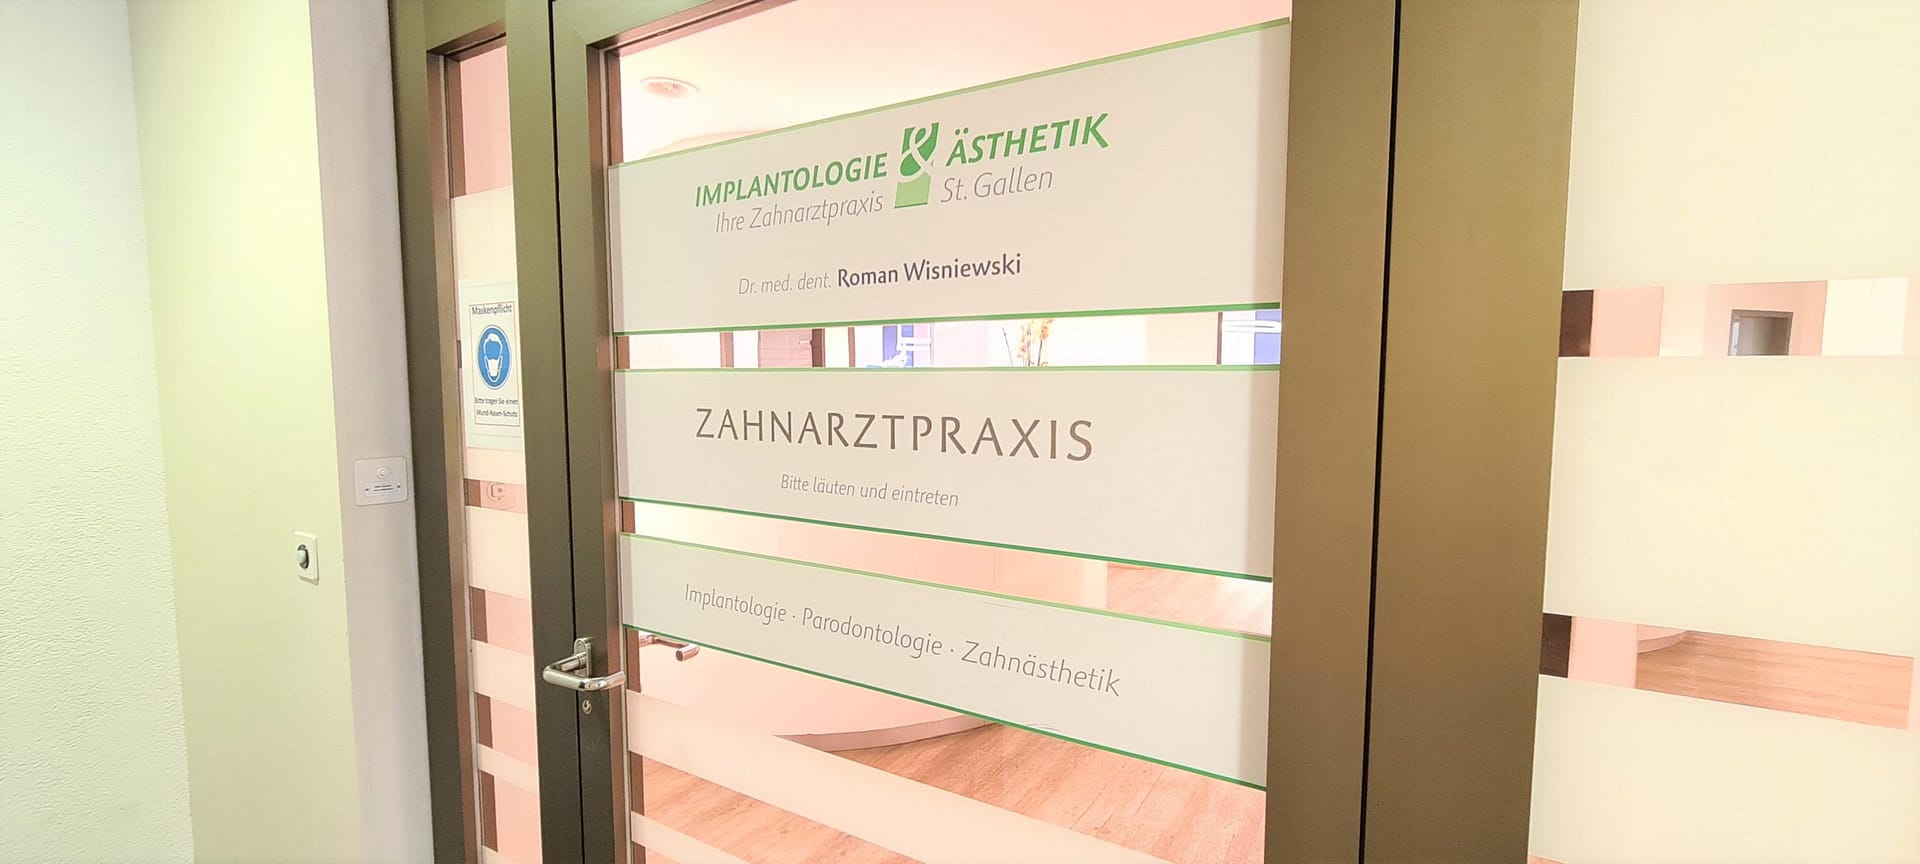 Zahnarztpraxis St. Gallen - Dr. Roman Wisniewski - Implantologie und All-on-4 - Eingang